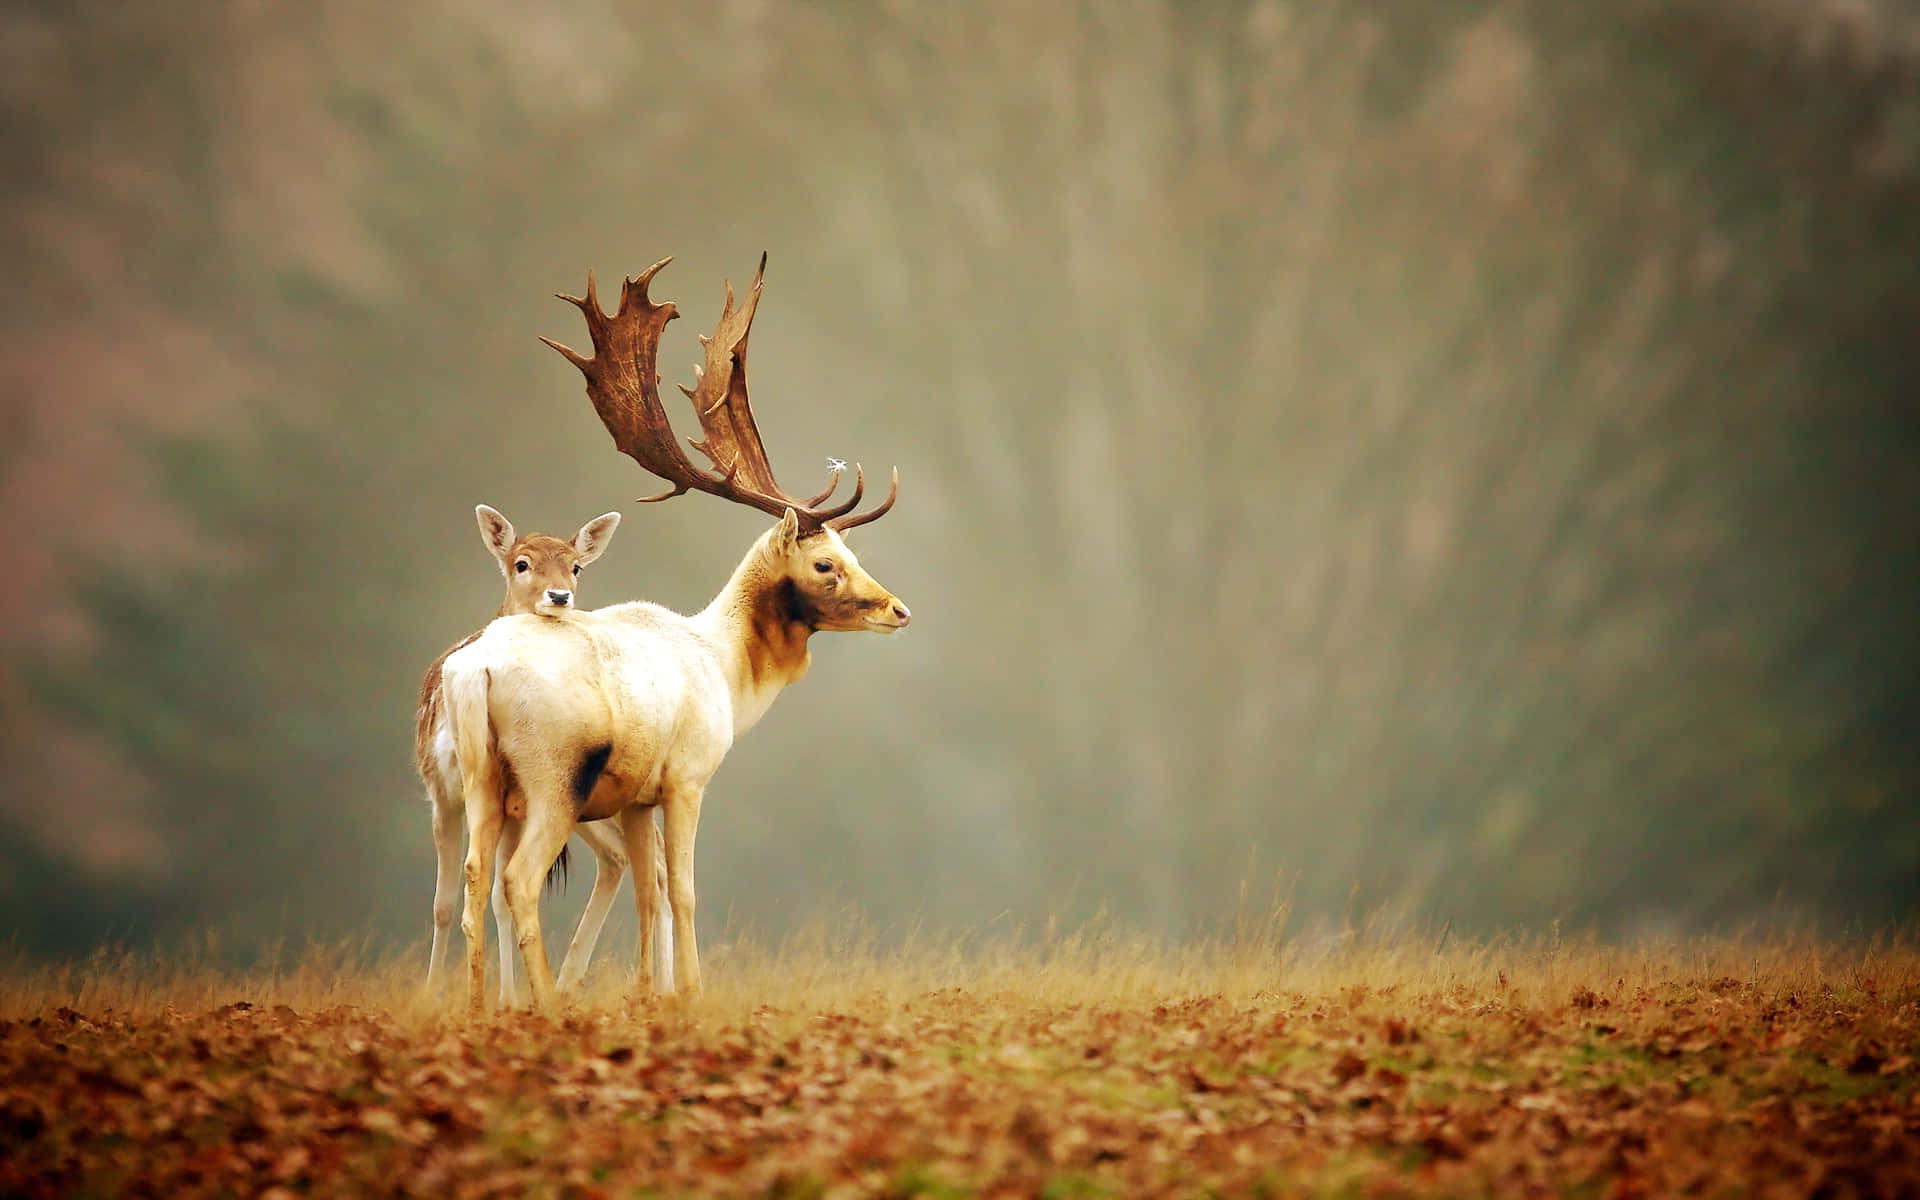 A beautiful Deer calmly walks through the forest Wallpaper